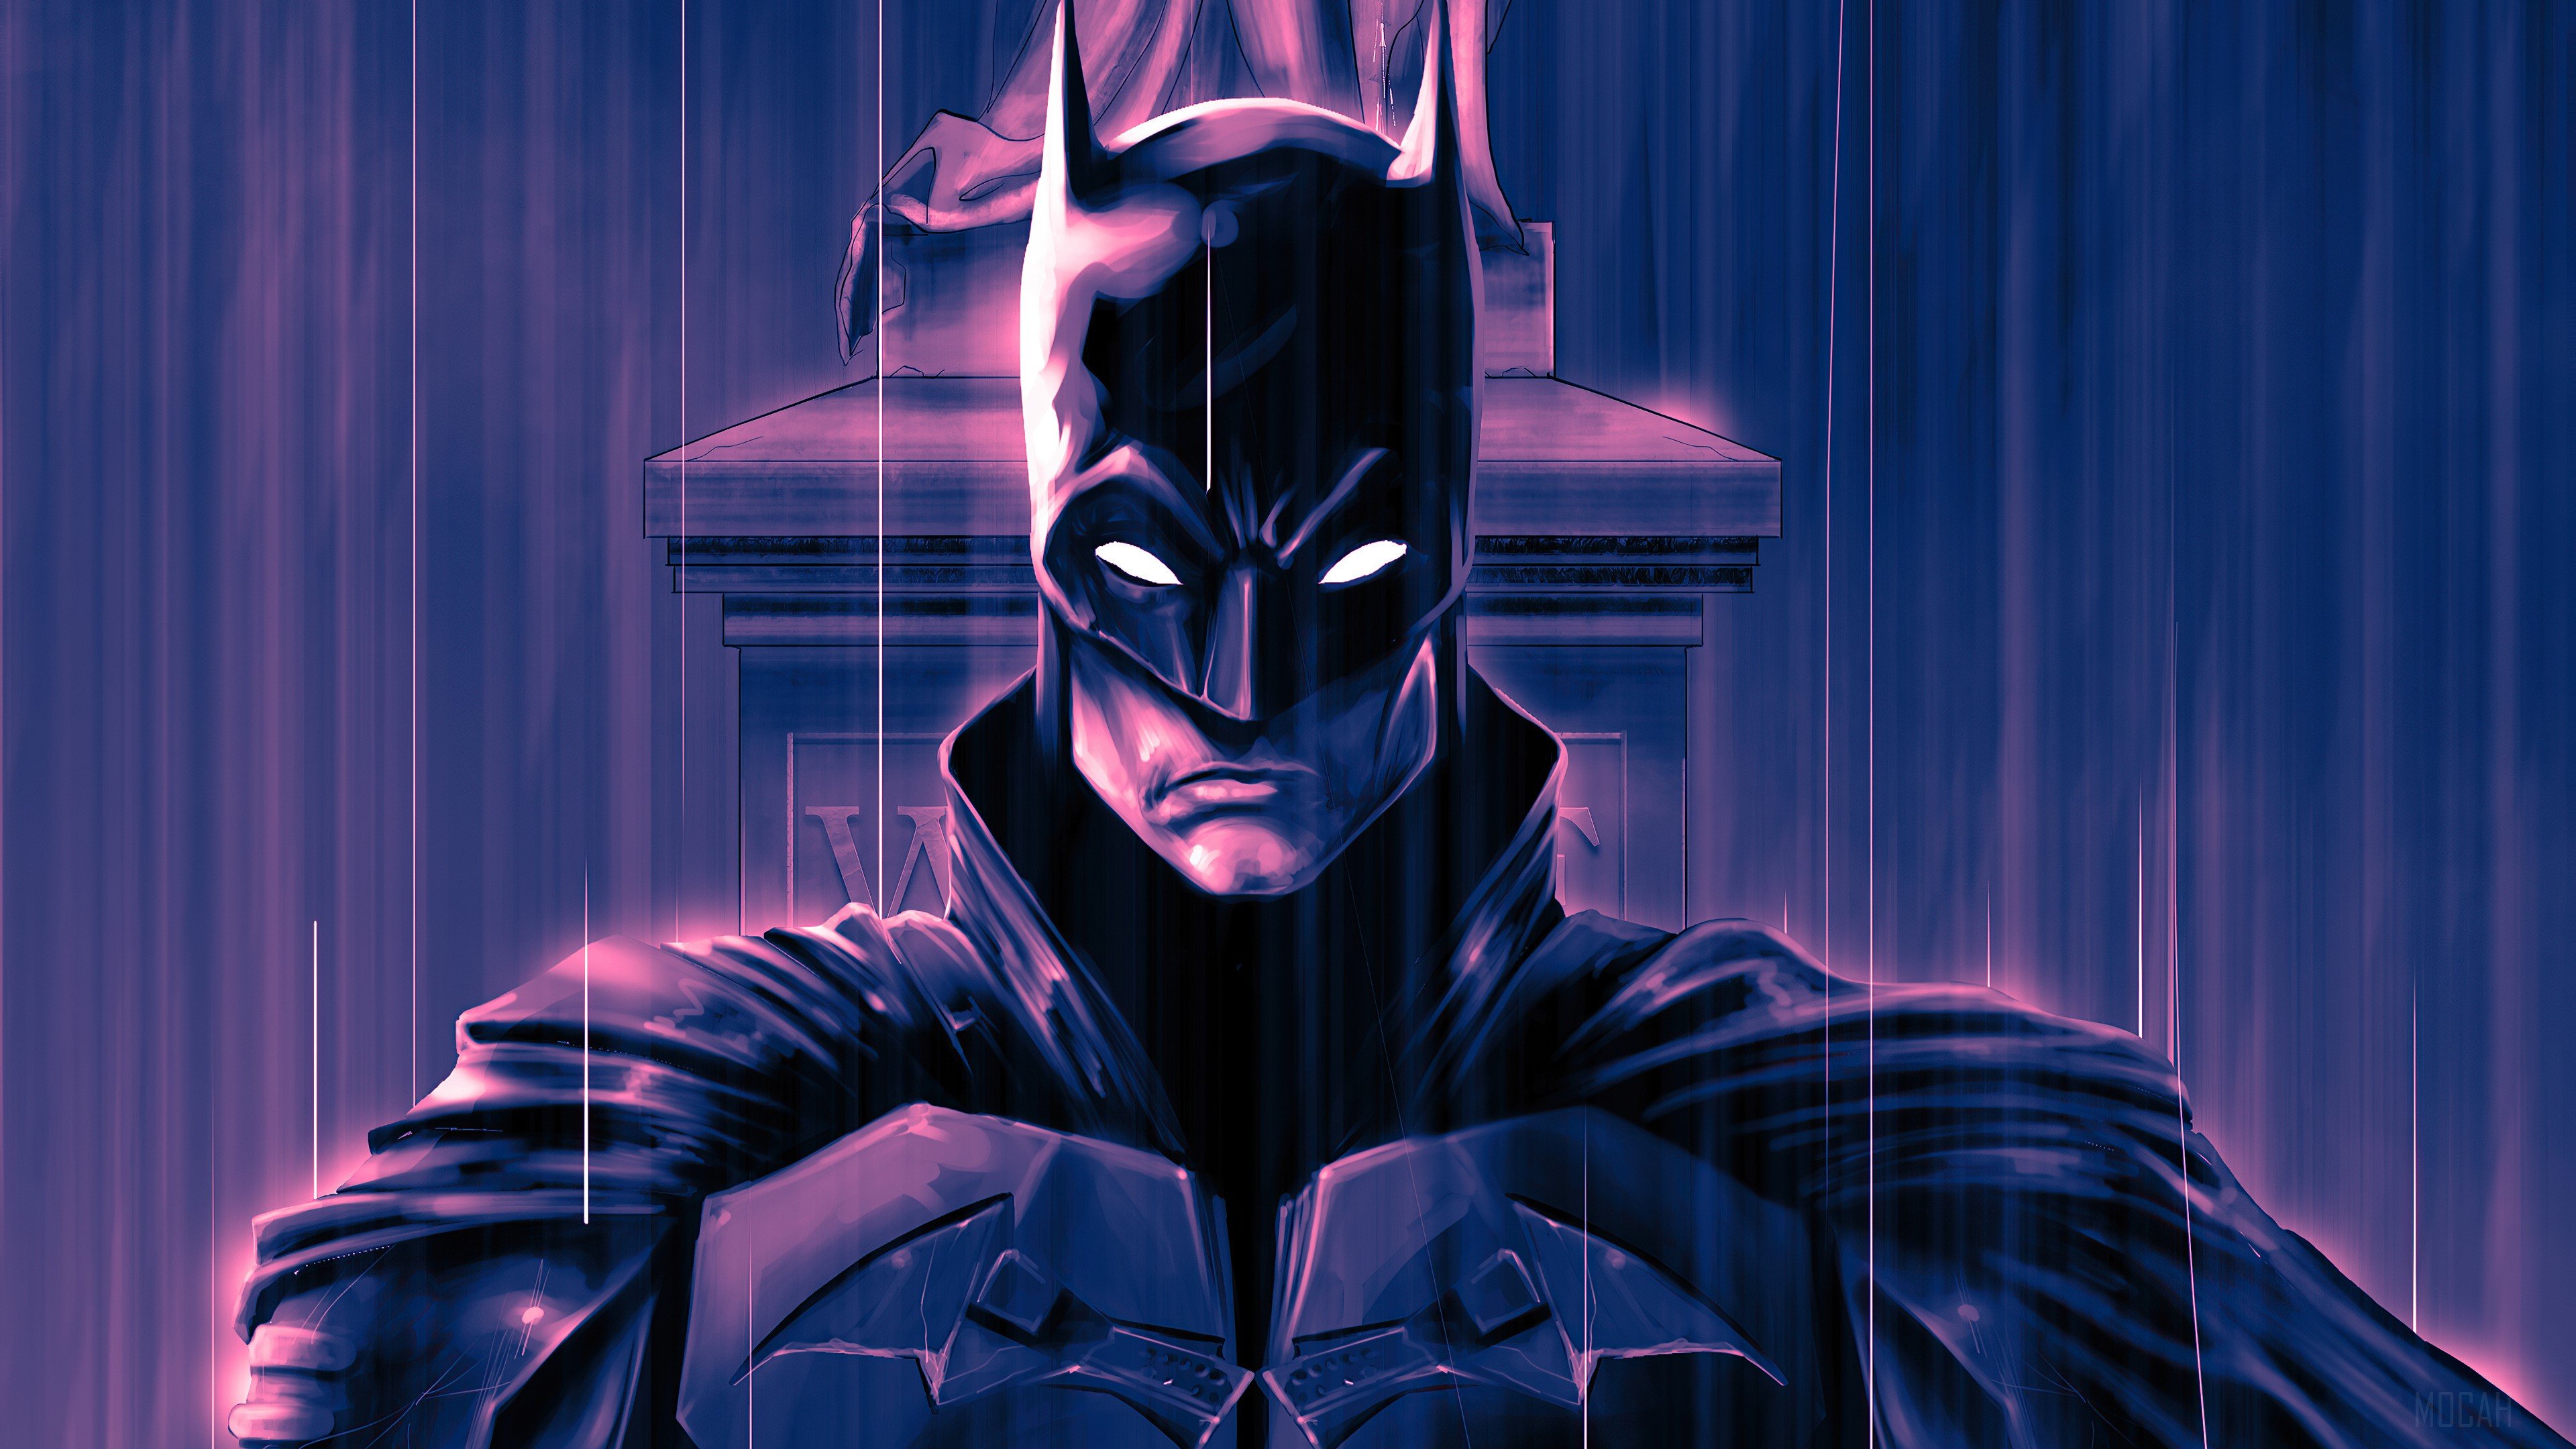 Tìm kiếm phù hợp với phong cách và tâm trạng của bạn trong bộ sưu tập hình nền Batman đa dạng. Có những hình nền tối giản với logo Batman đầy uy lực, cũng như các hình ảnh đầy màu sắc với Batman và thế giới của mình.